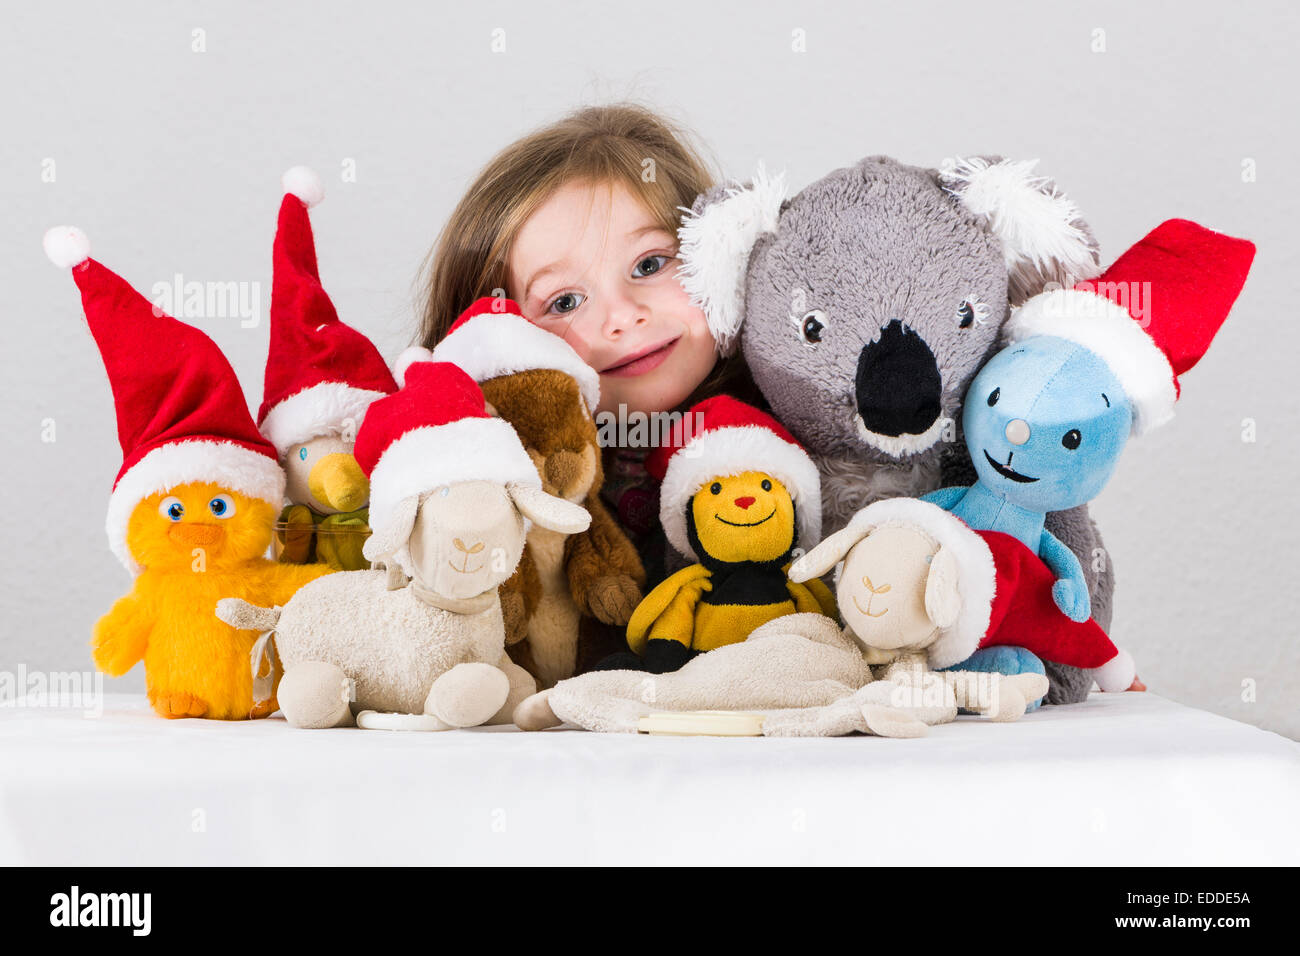 Niña de 3 años, con juguetes de peluche luciendo gorros de Santa Claus Foto de stock